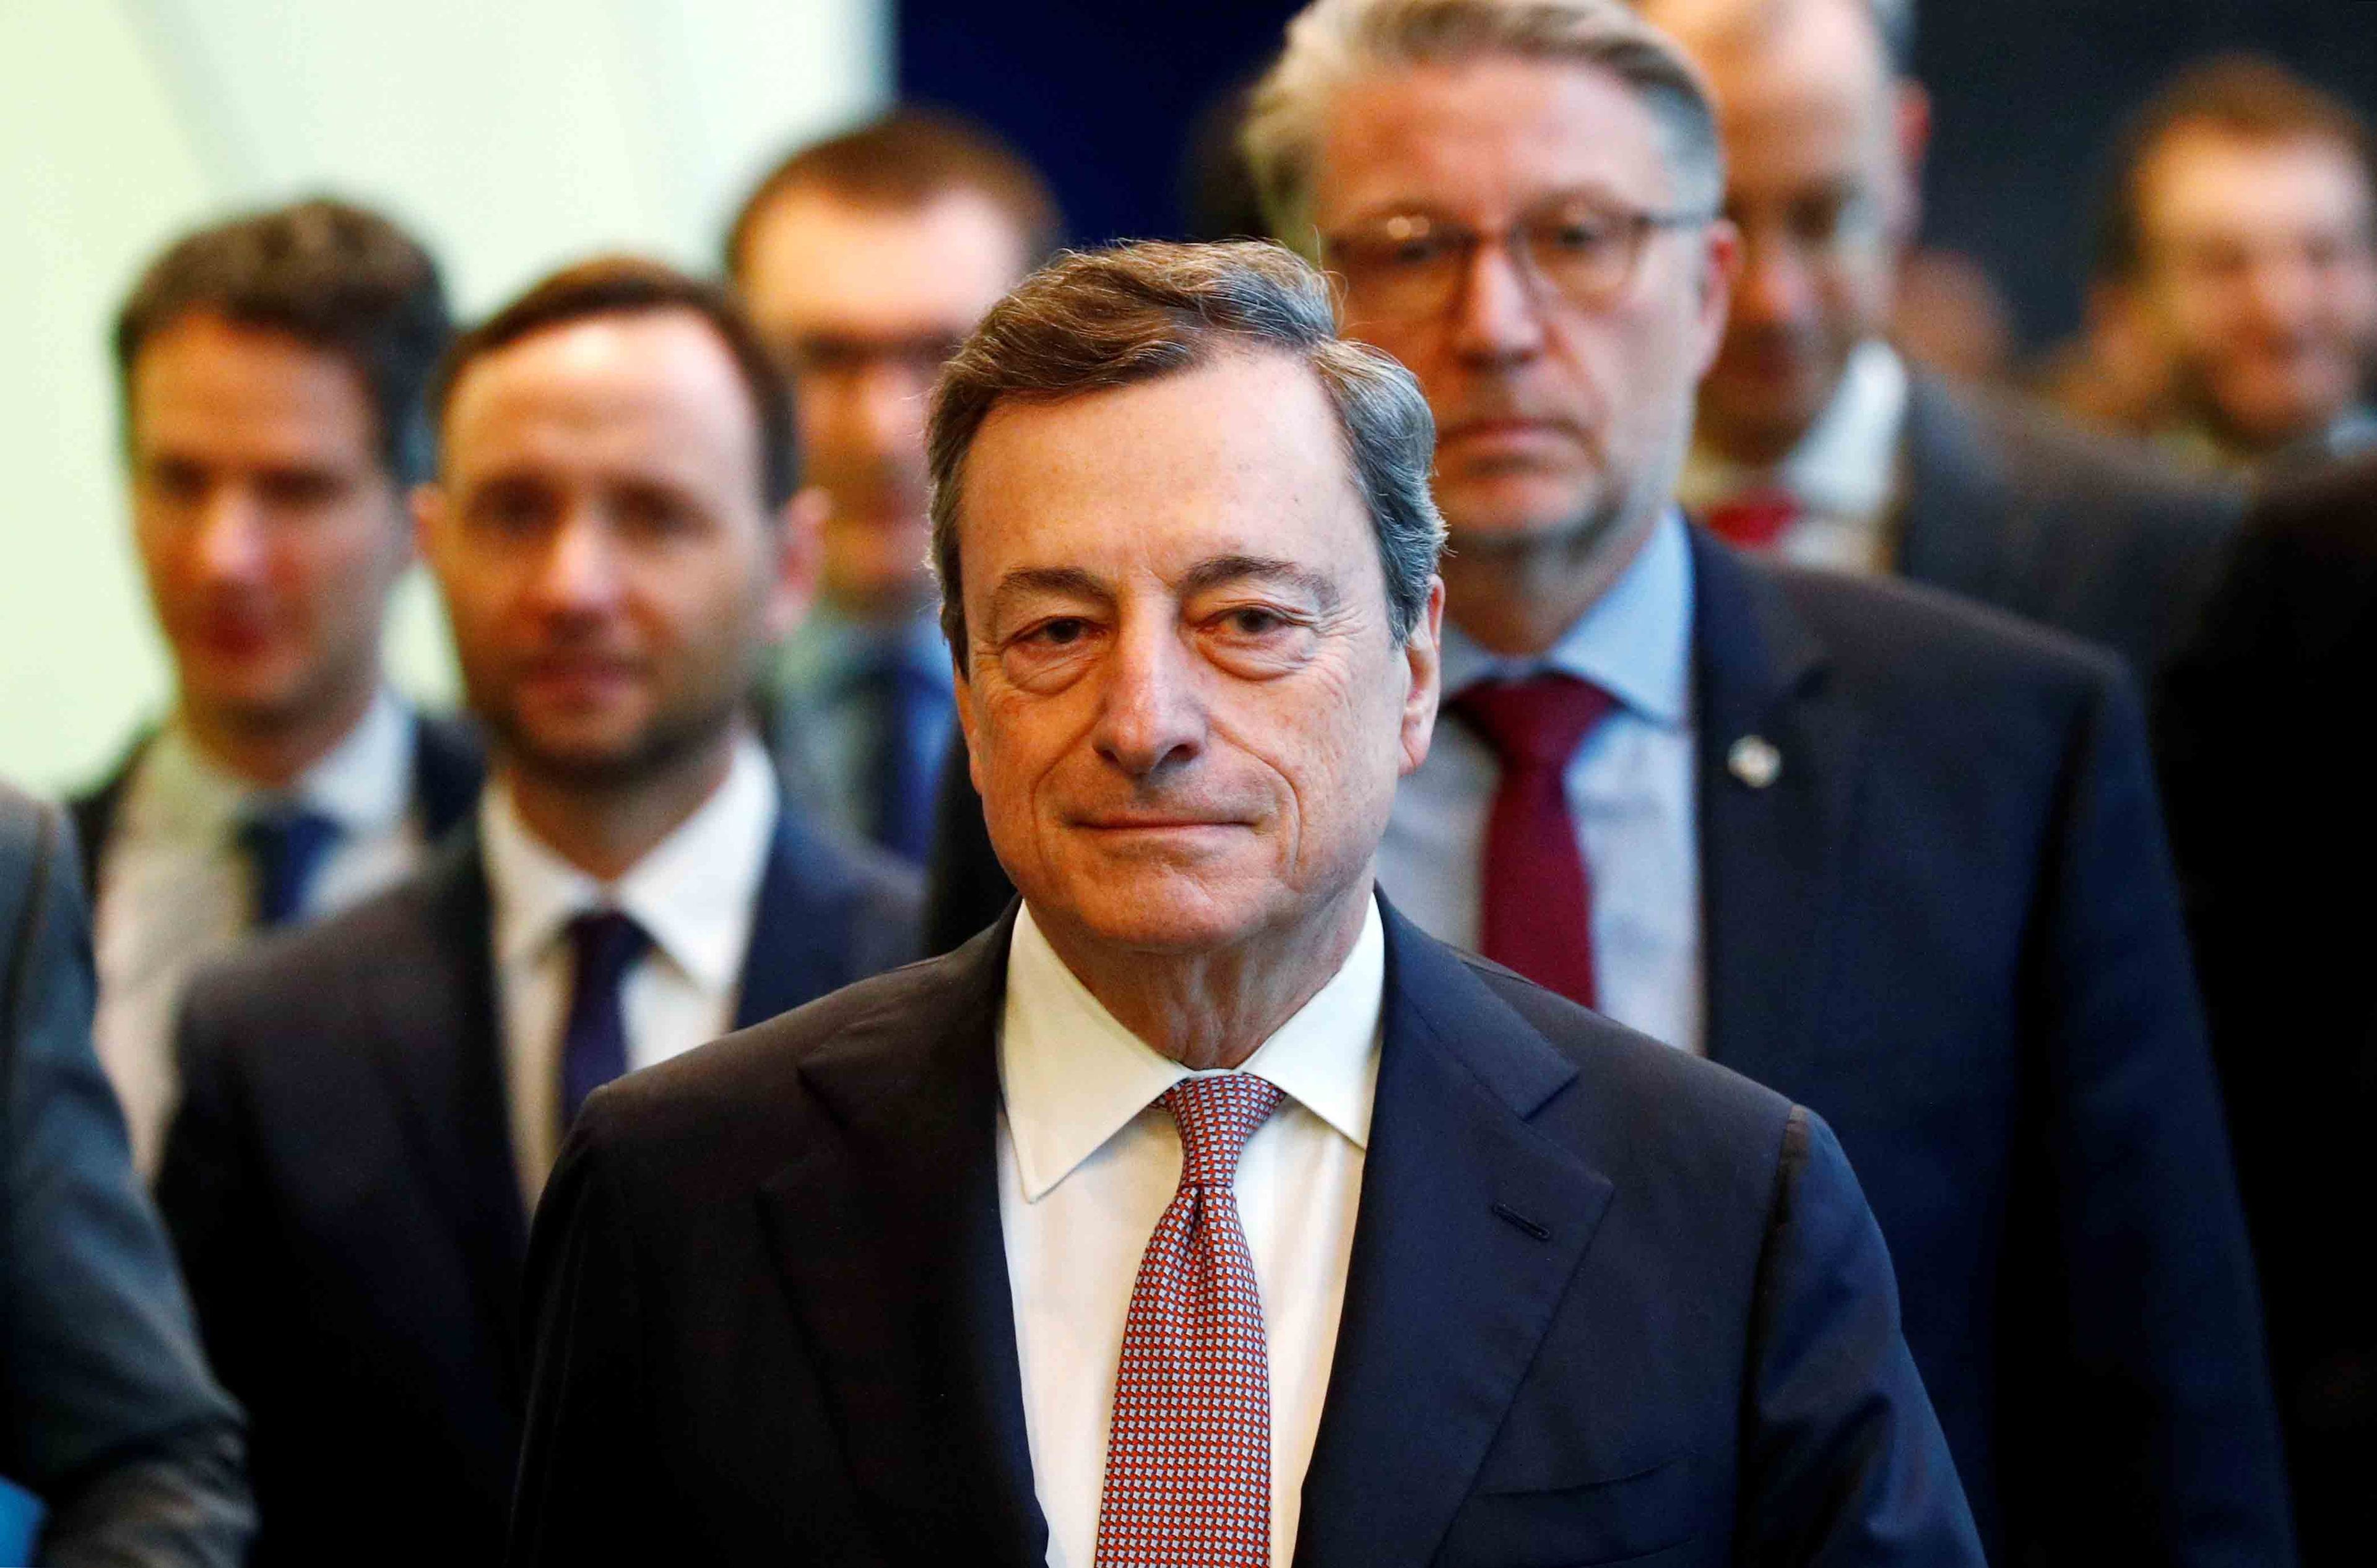 Mario Draghi es un economista italiano, presidente del Banco Central Europeo